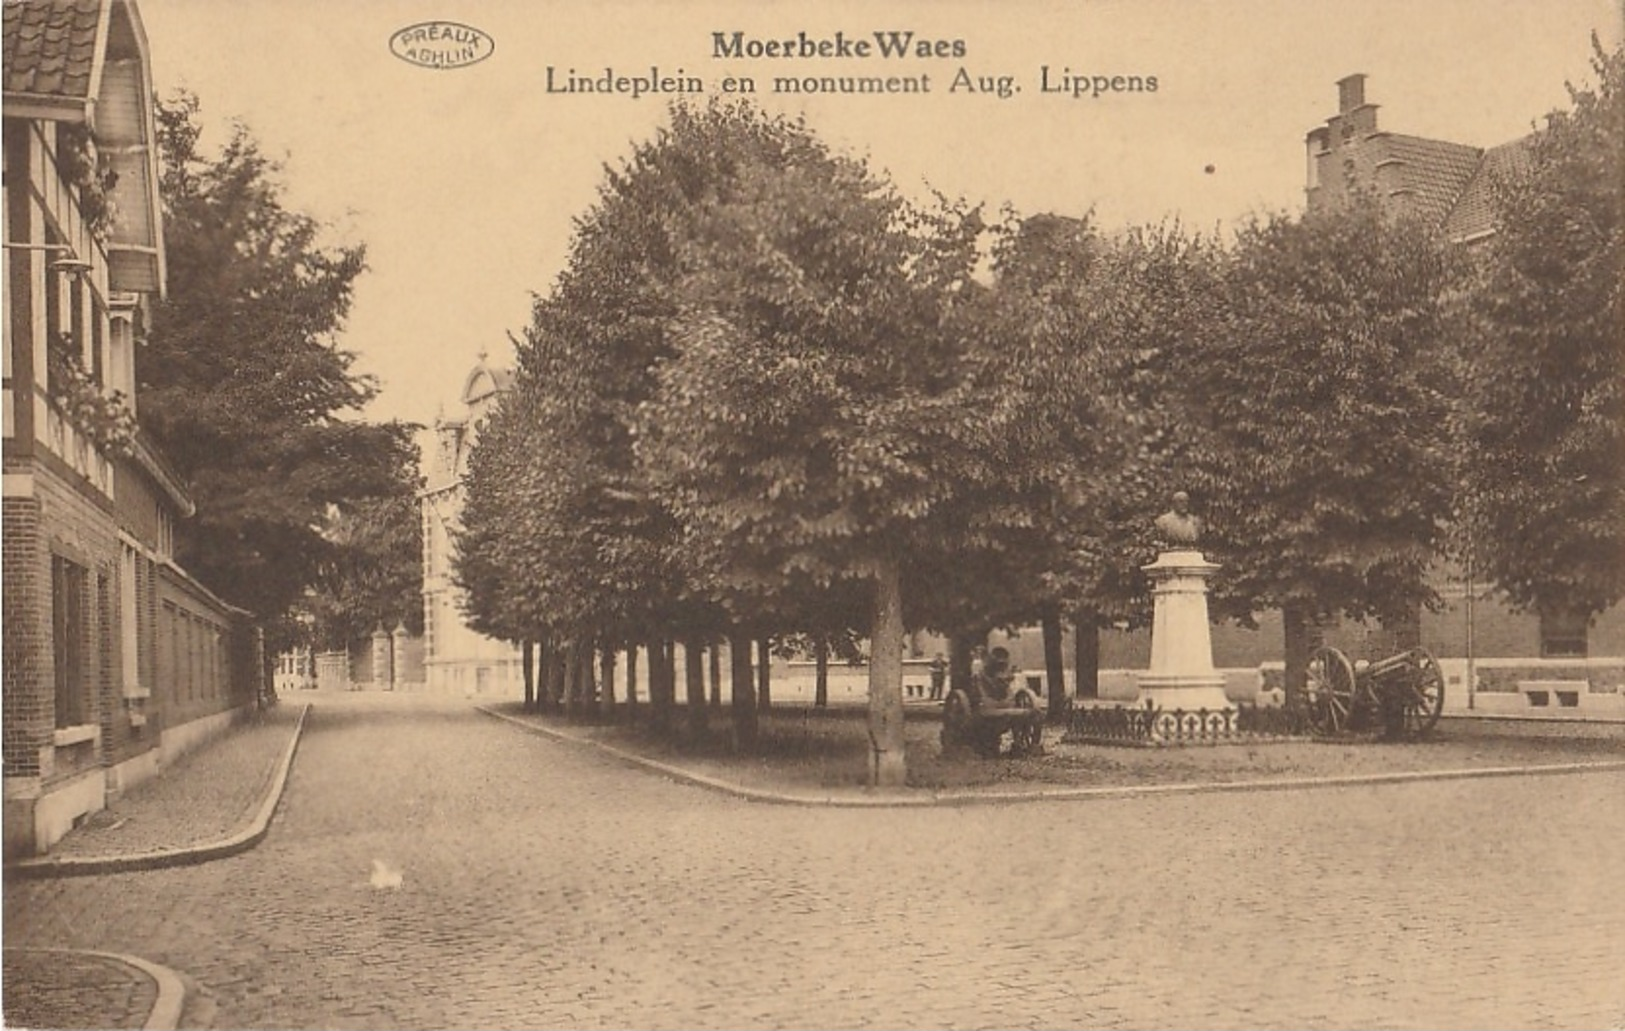 MOERBEKE WAAS Lindeplein En Monument Aug. Lippens - Moerbeke-Waas